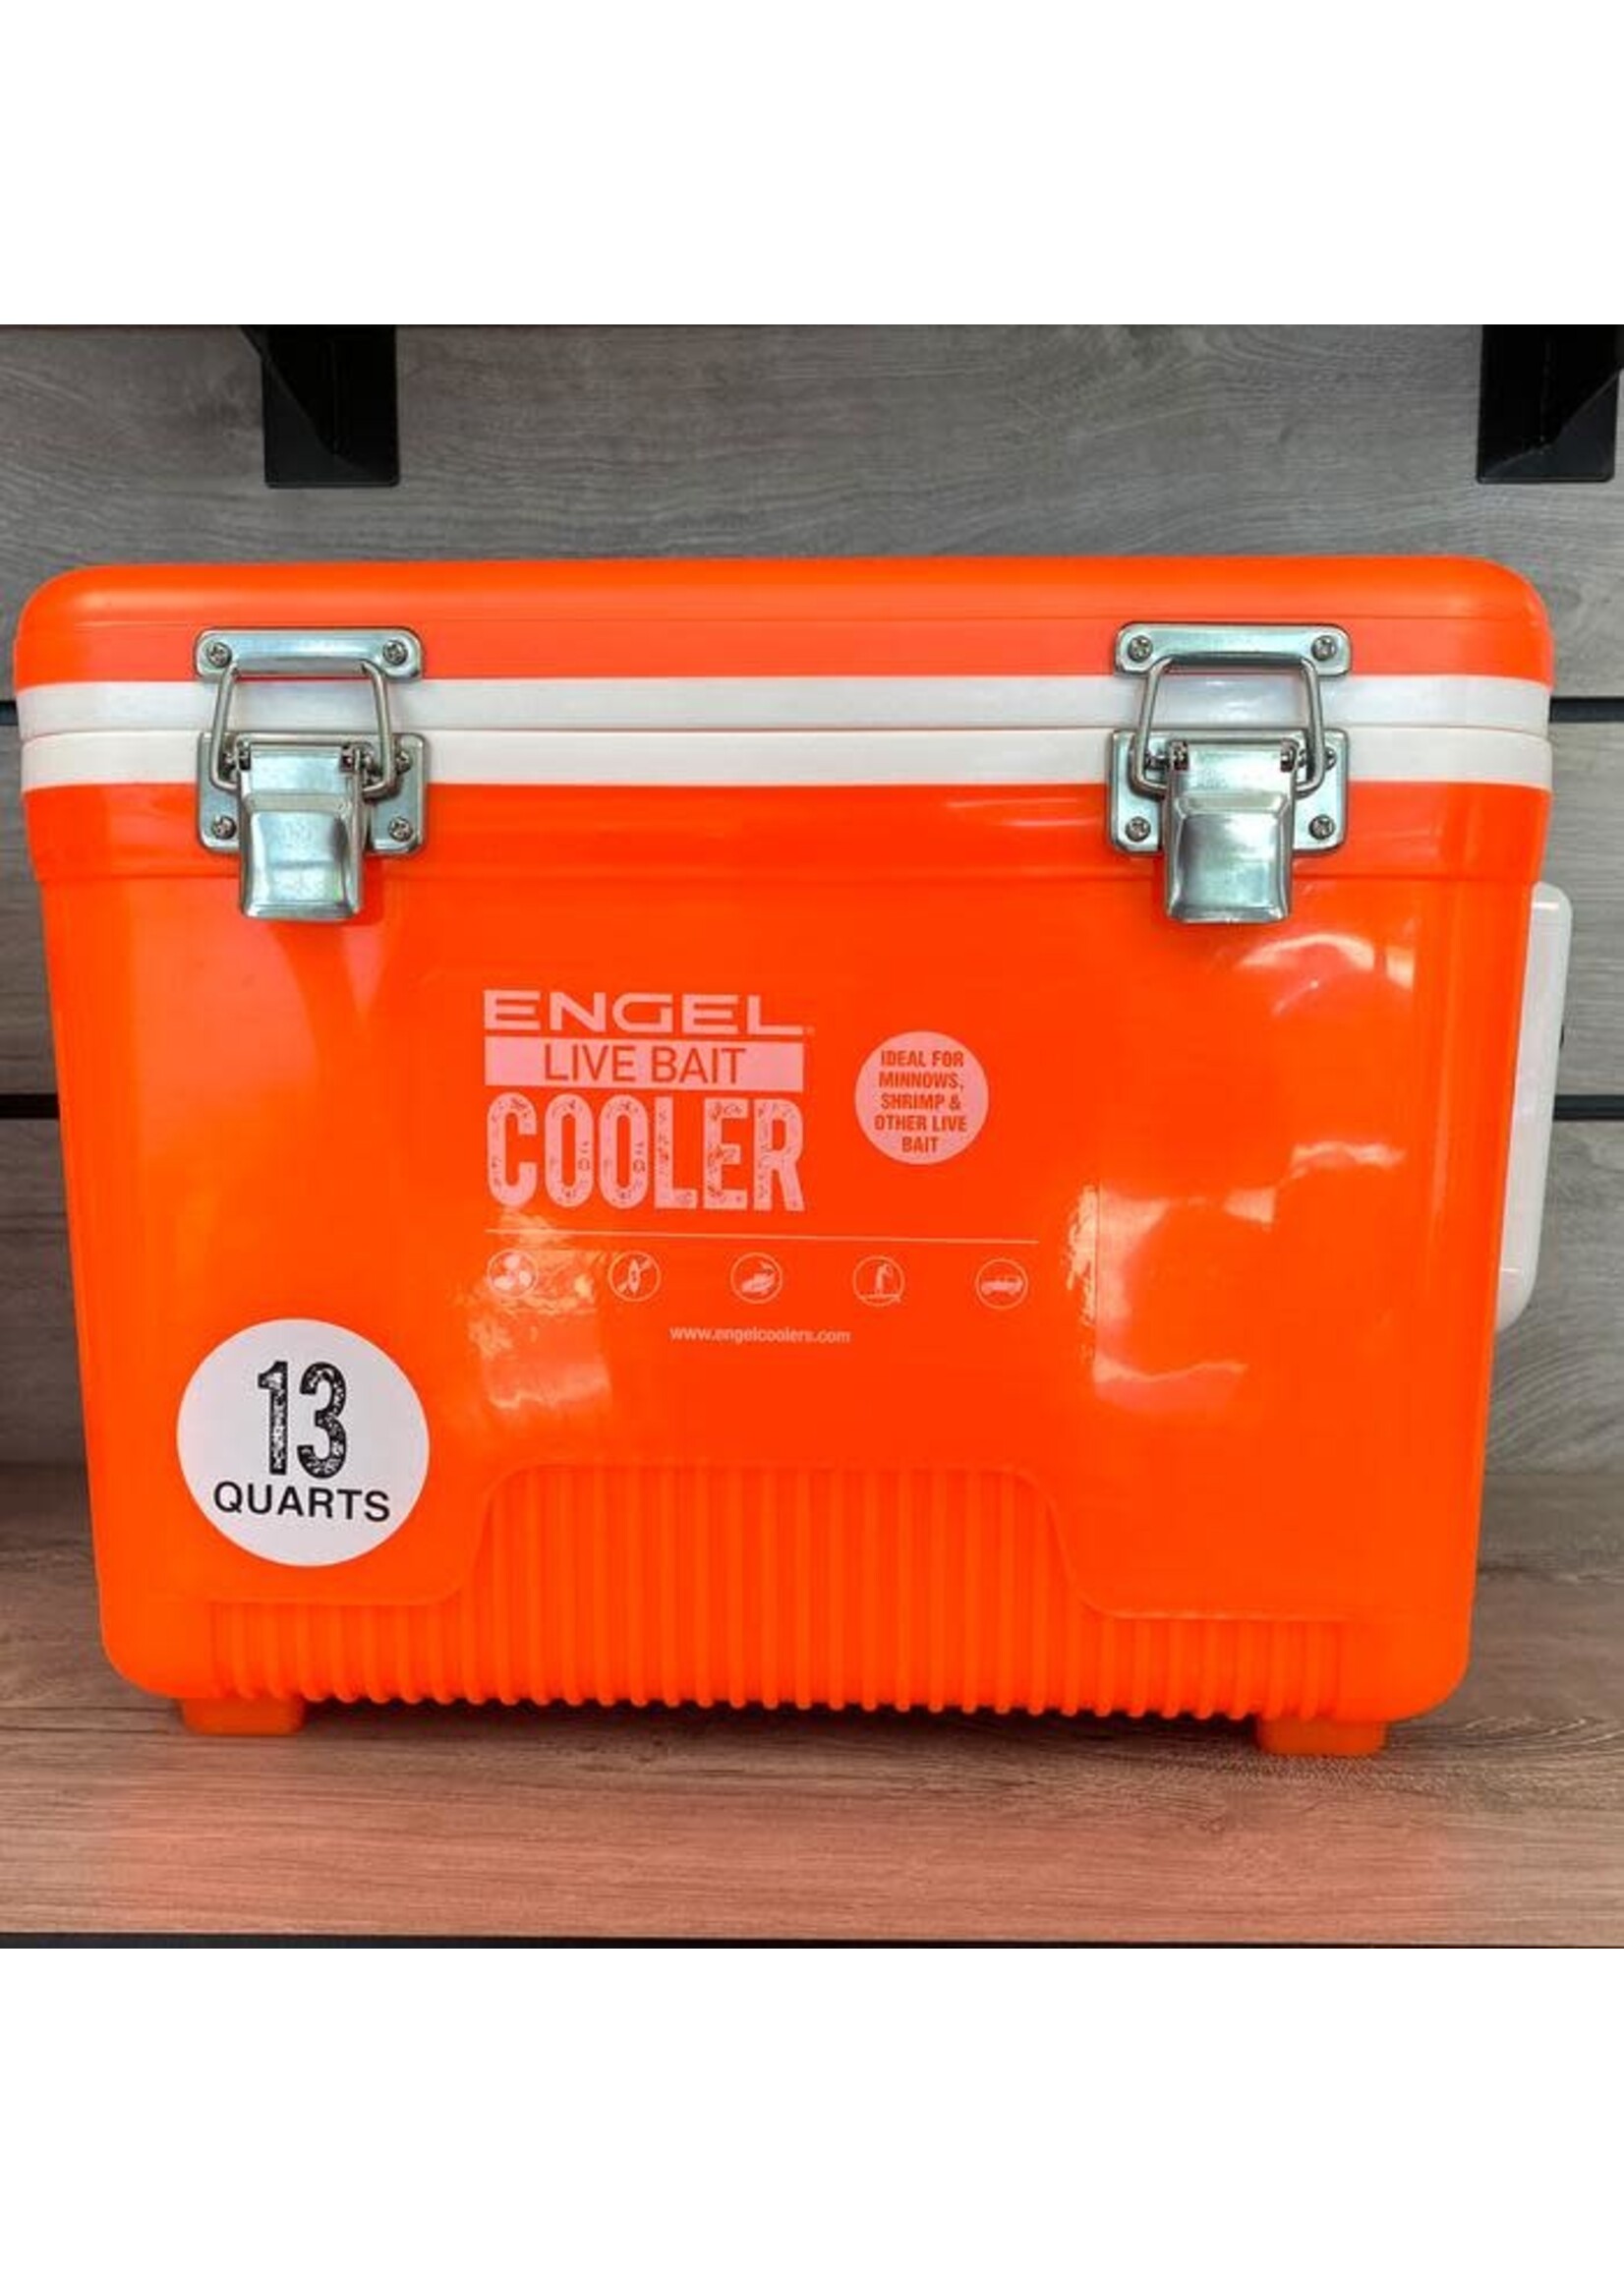 Engel Bait Cooler Hi Vis Orange 13 Quart - Tackle Shack